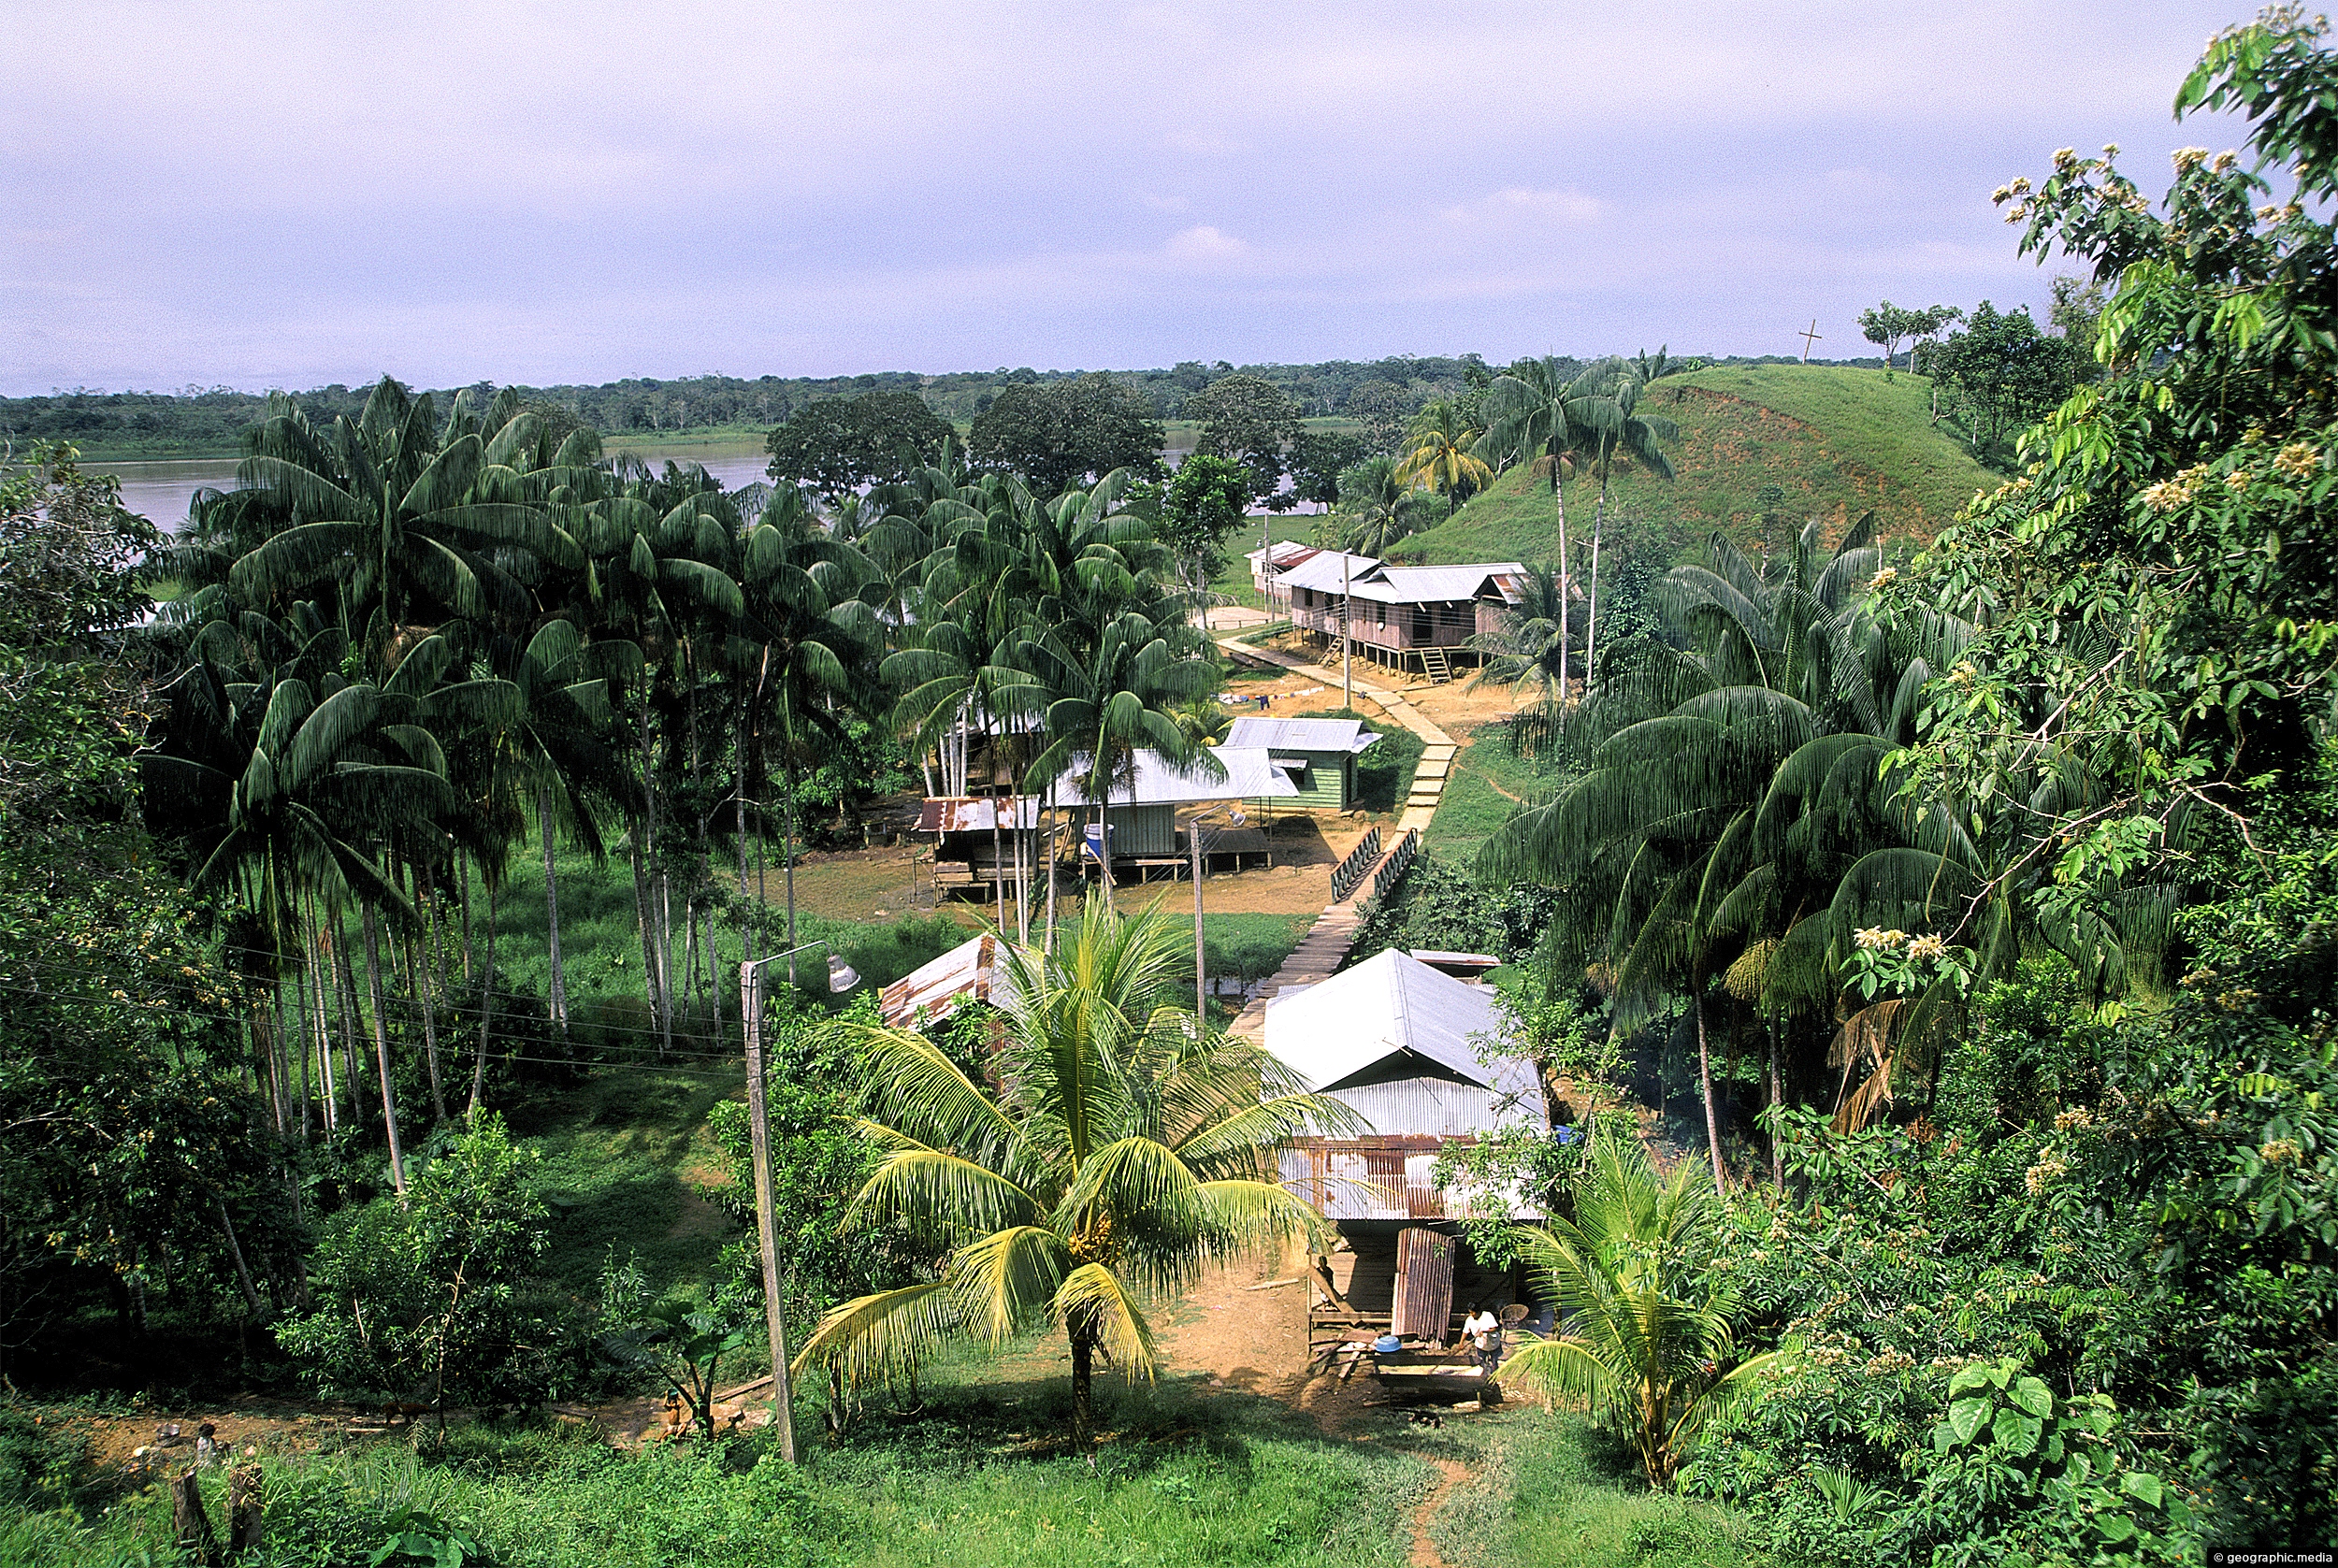 Puerto Narino settlement in the Amazonas